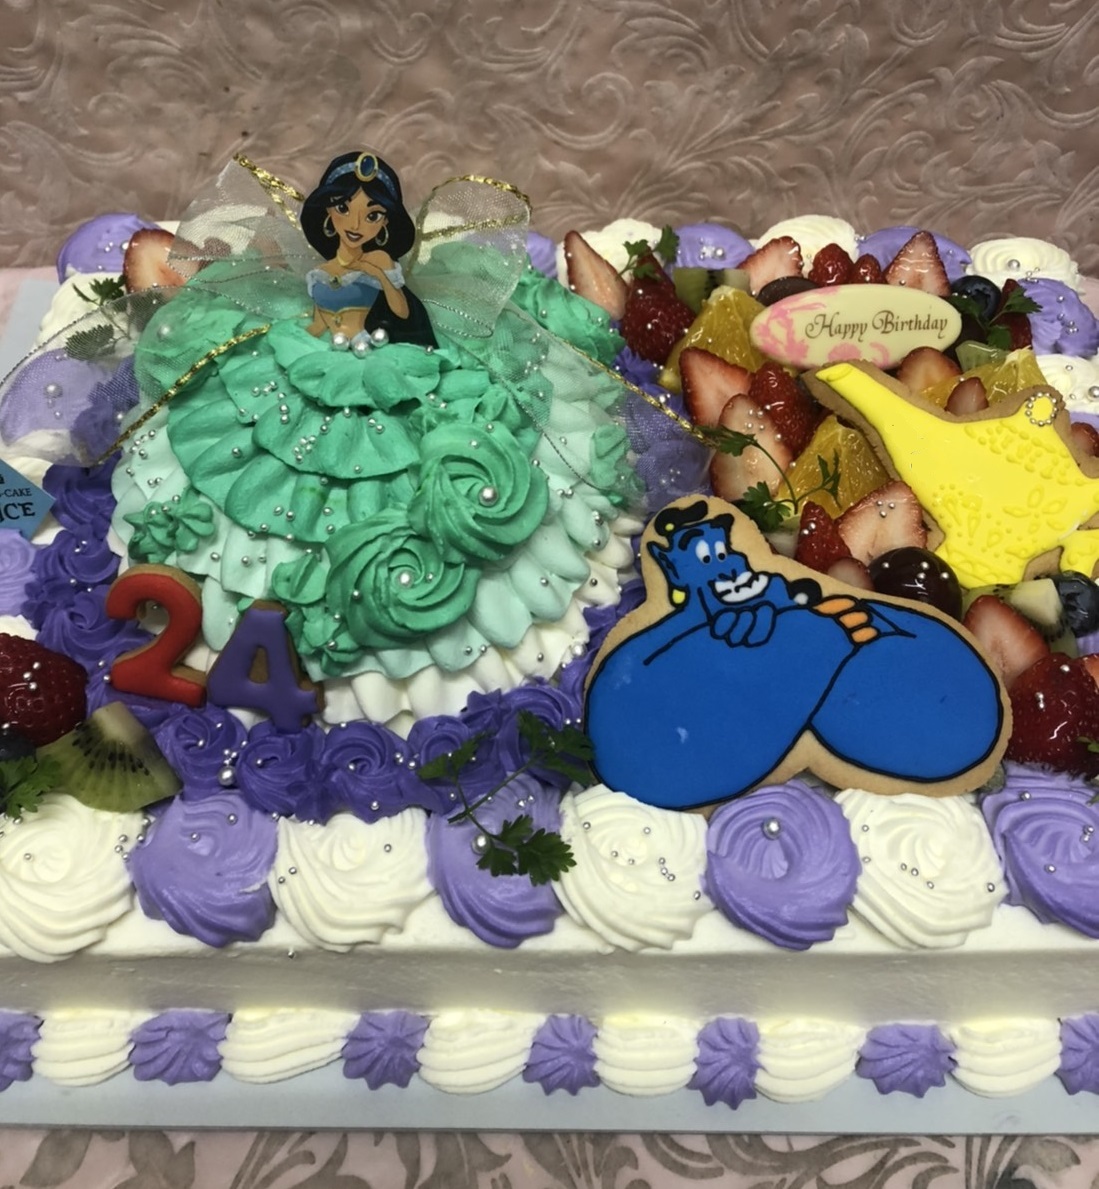 特大デコレーションケーキ 大阪でオーダーケーキなら大阪ミナミ なんば 心斎橋の宅配ケーキ プリンセスケーキアリス